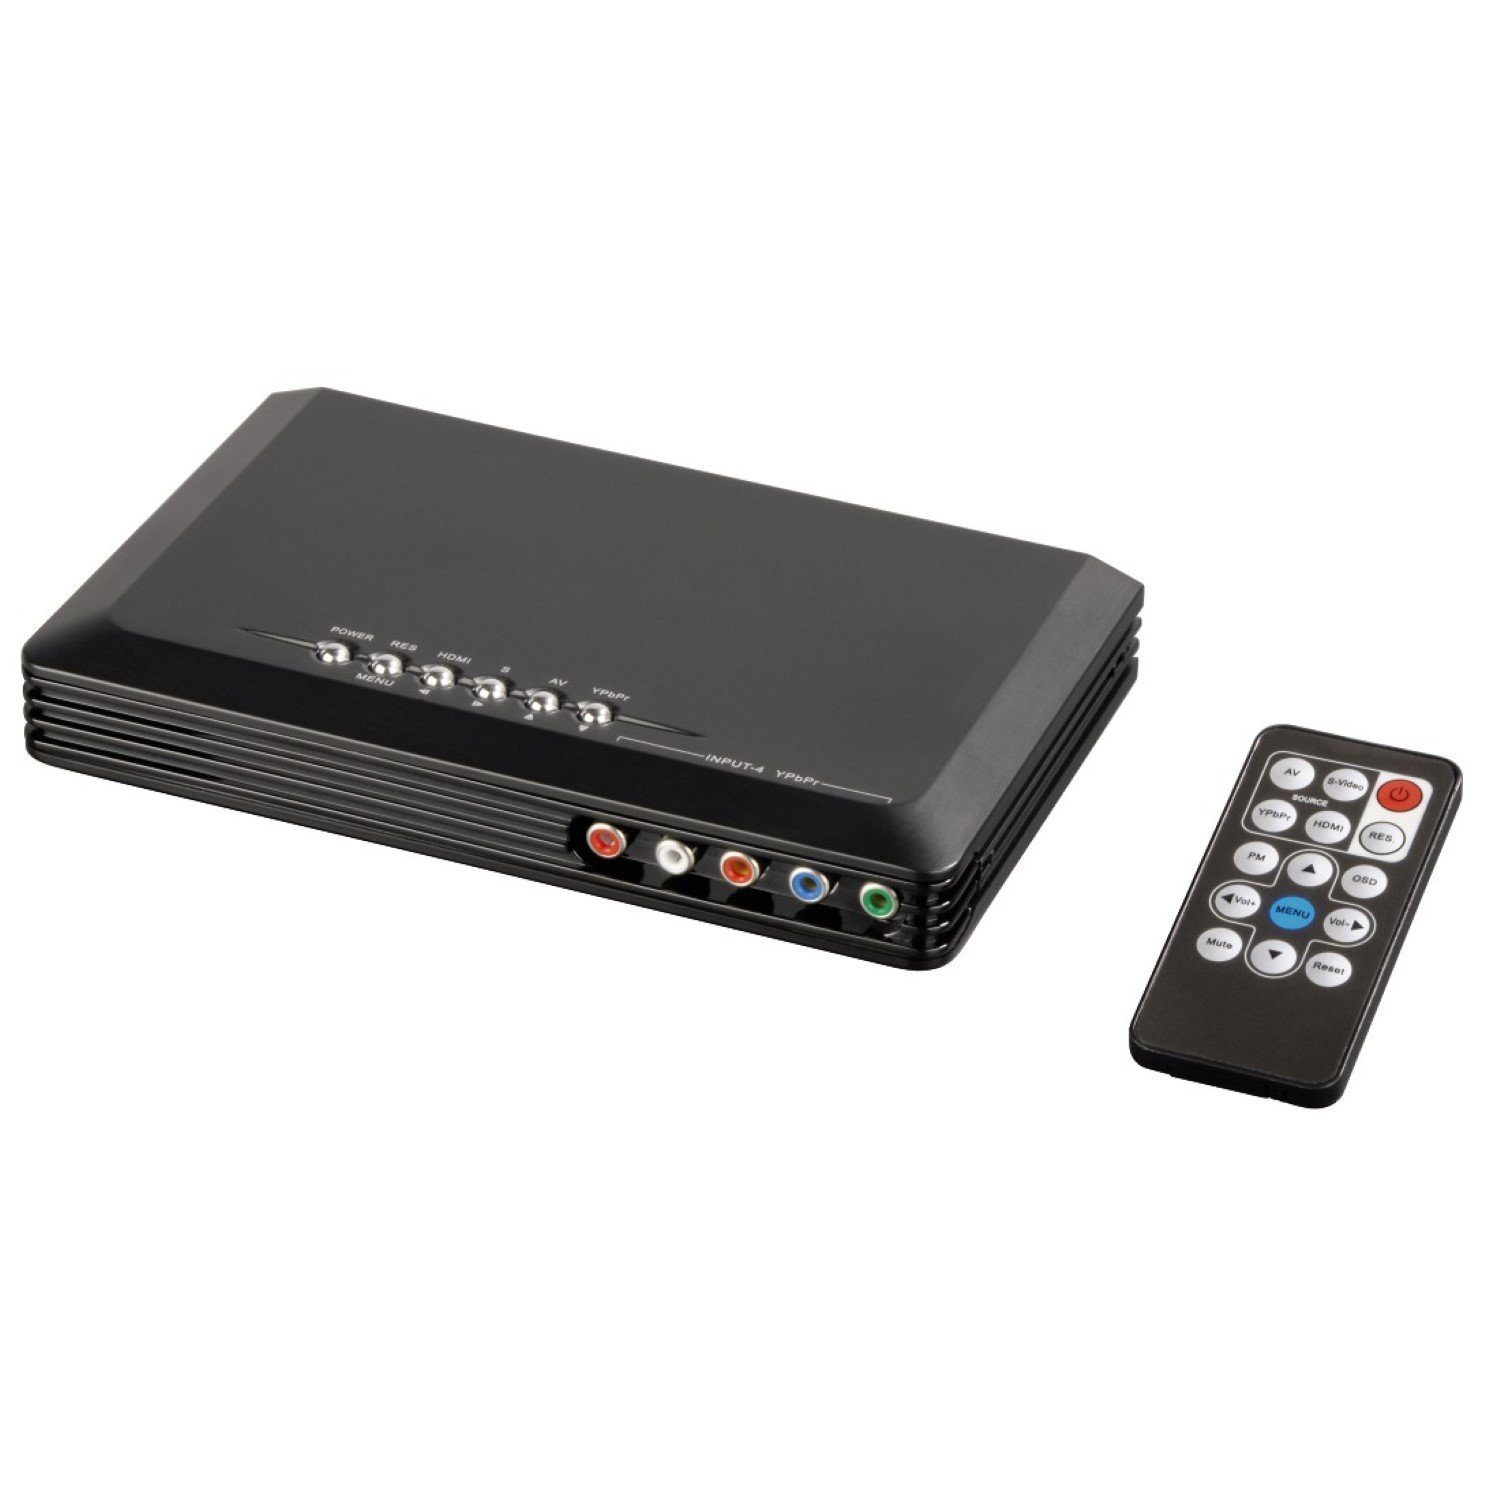 Hama Video Konverter 4in1 Skalierer HDMI Adapter Video-Adapter Kein zu HDMI,  S-Video, YUV Component, Composite, YUV Component S-Video Cinch Composite  auf Full-HD 1080p skaliert, passend für HD TV Beamer Konsole Blu-Ray  DVD-Player